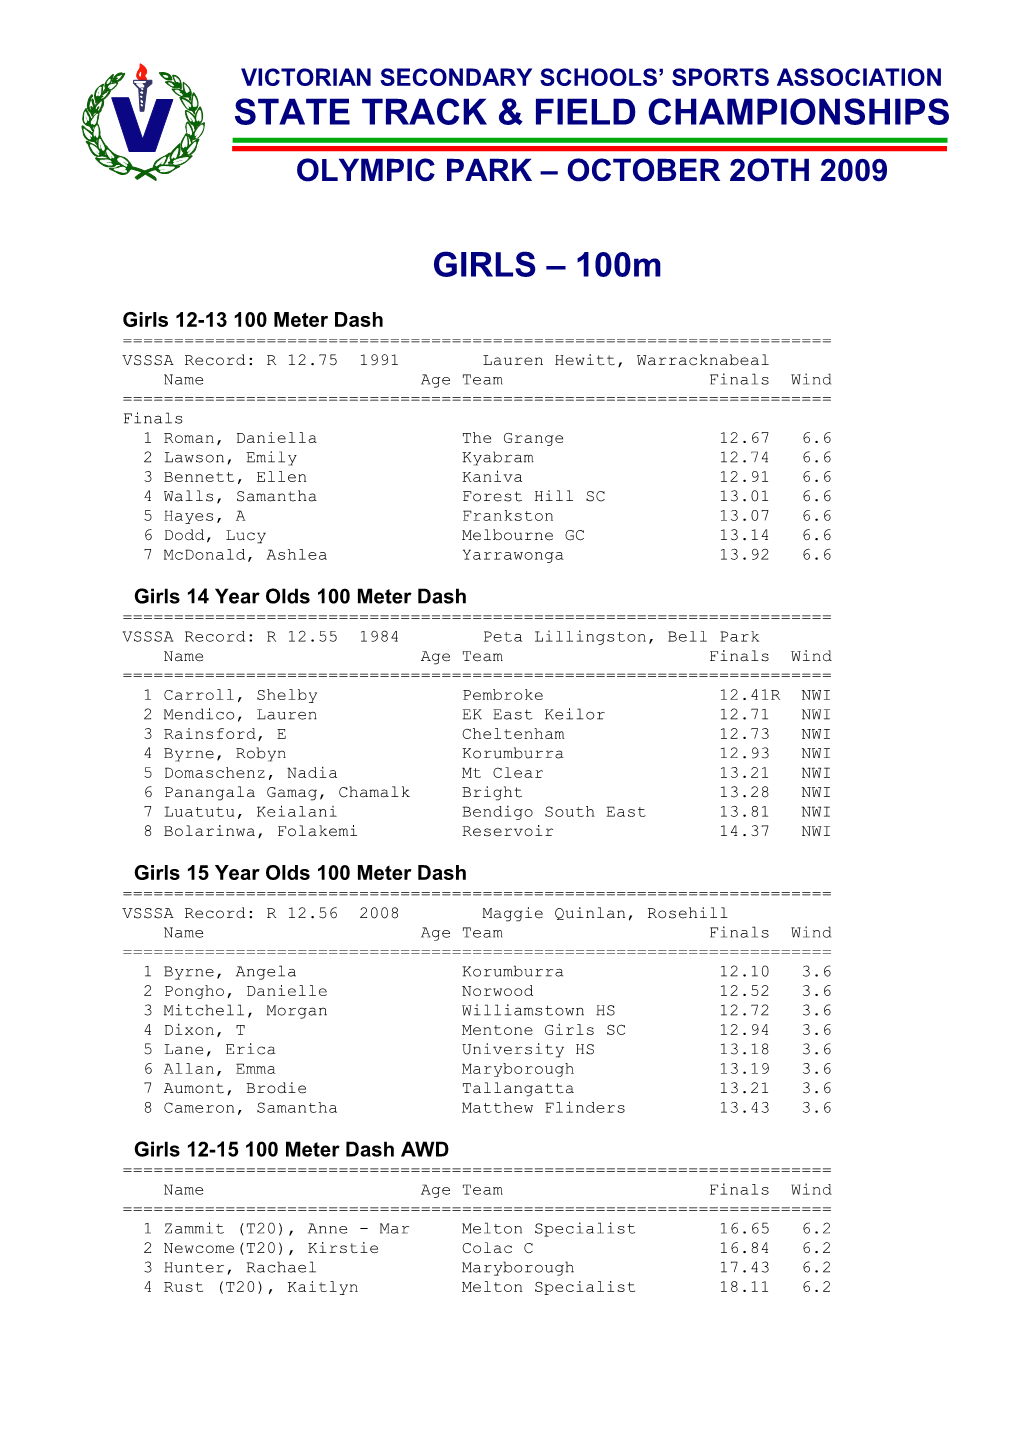 Girls 12-13 100 Meter Dash